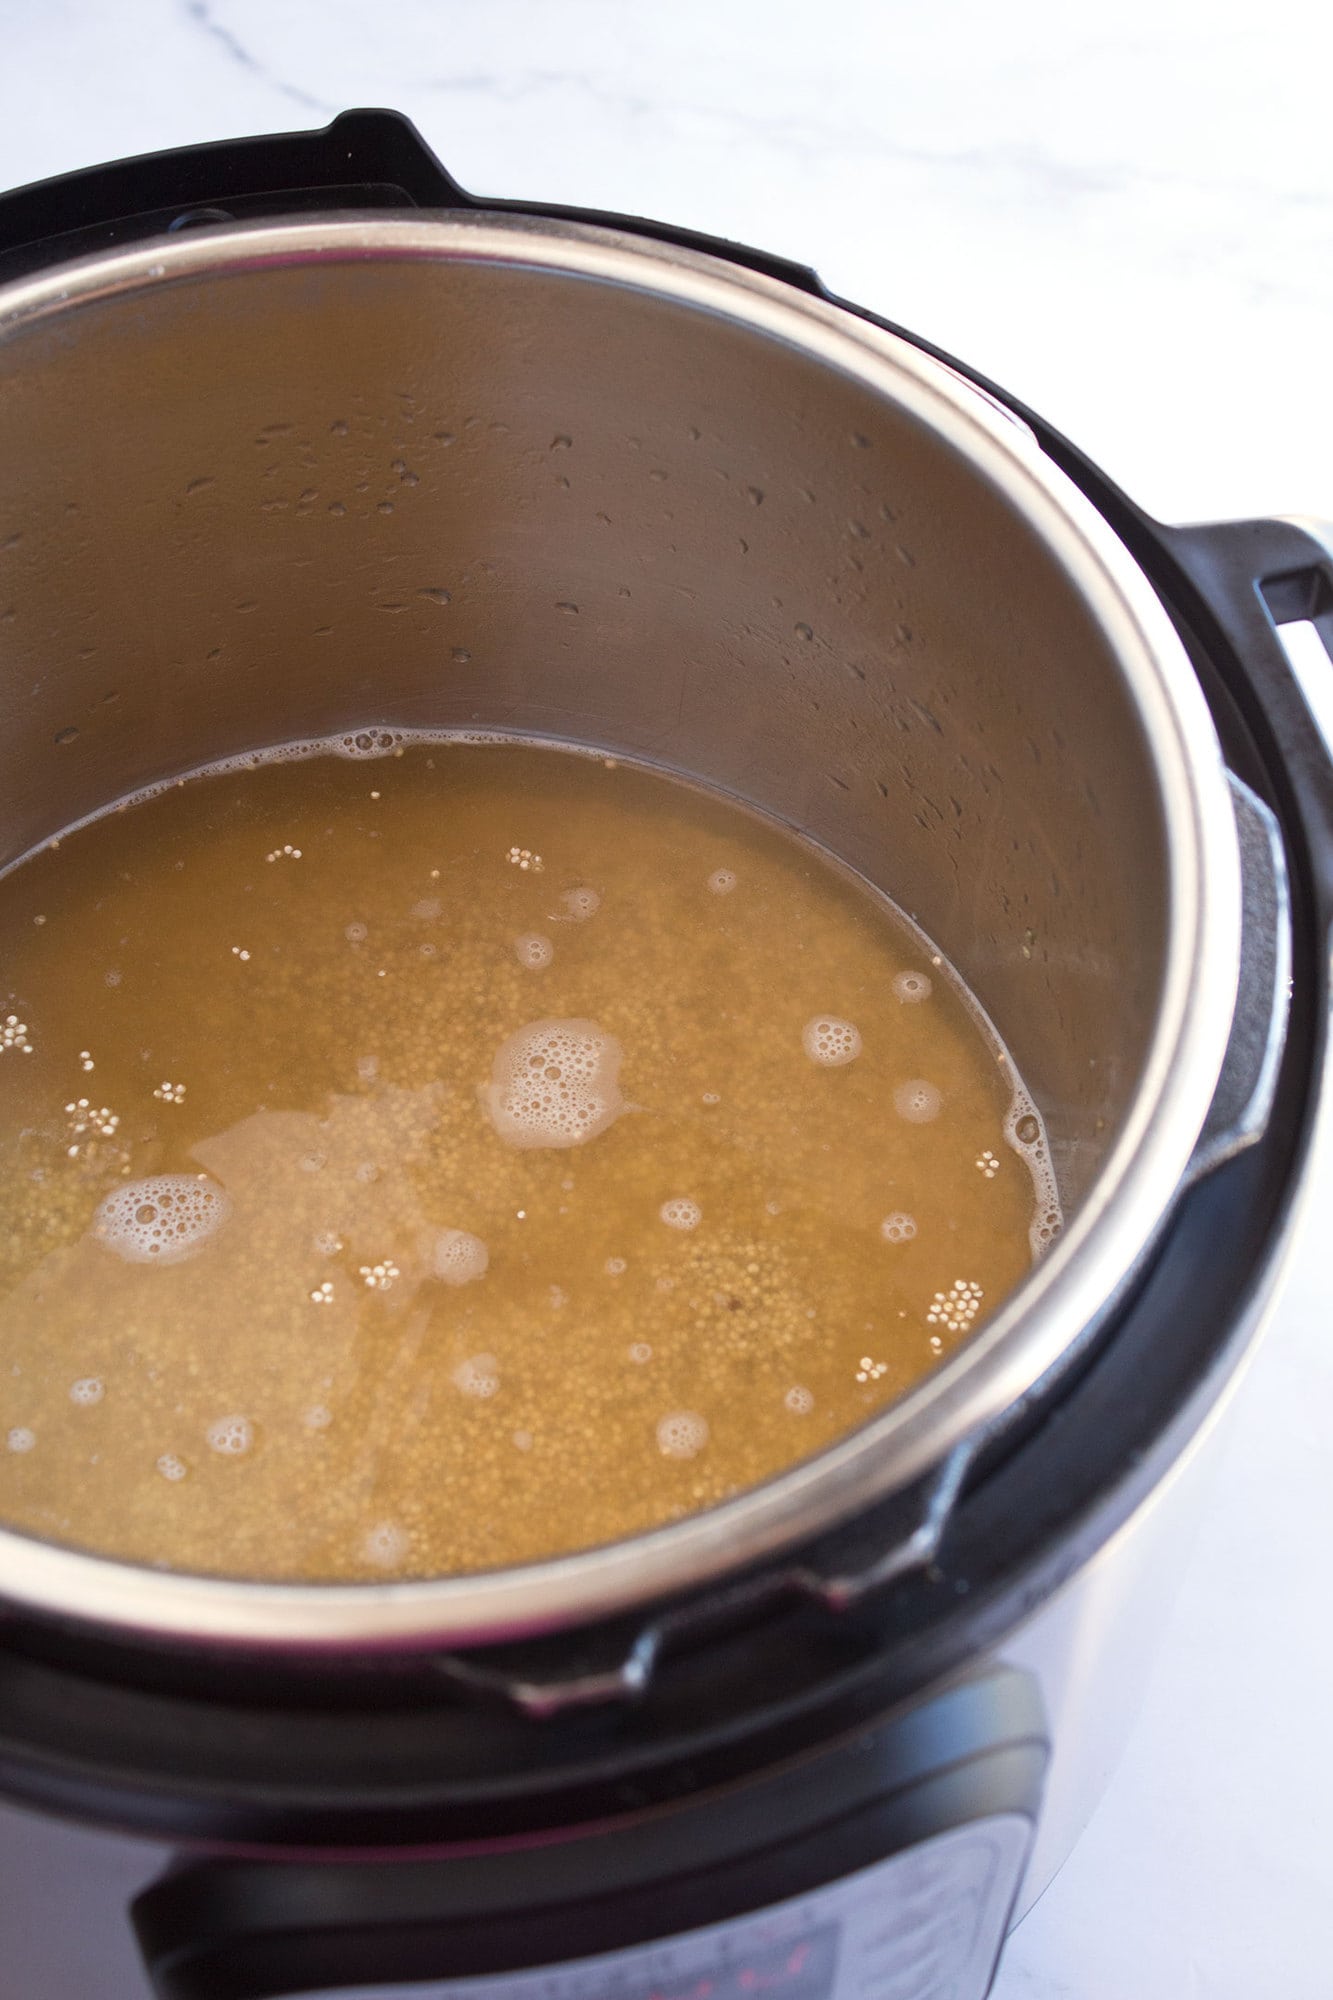 Liquid and quinoa in pot